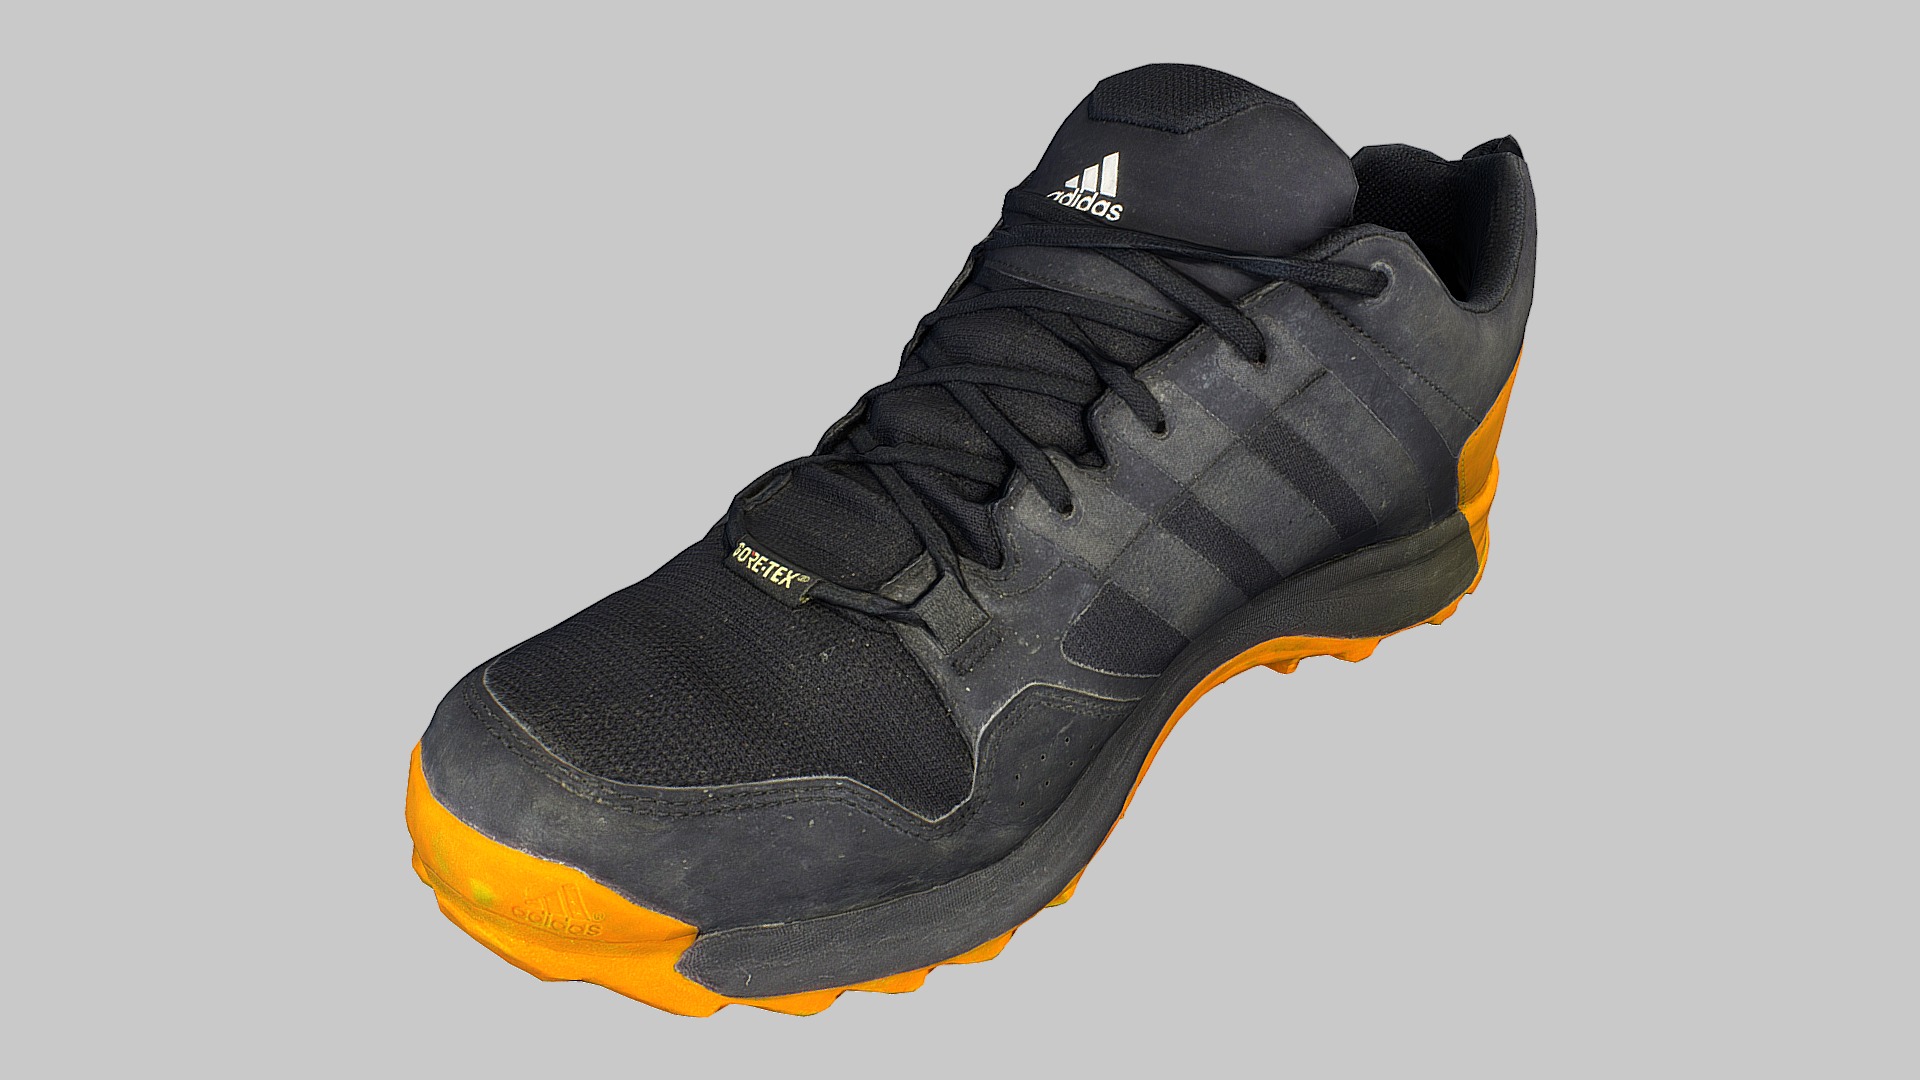 3D model Adidas sneaker shoe 3D model (low-poly) - This is a 3D model of the Adidas sneaker shoe 3D model (low-poly). The 3D model is about a black and yellow shoe.